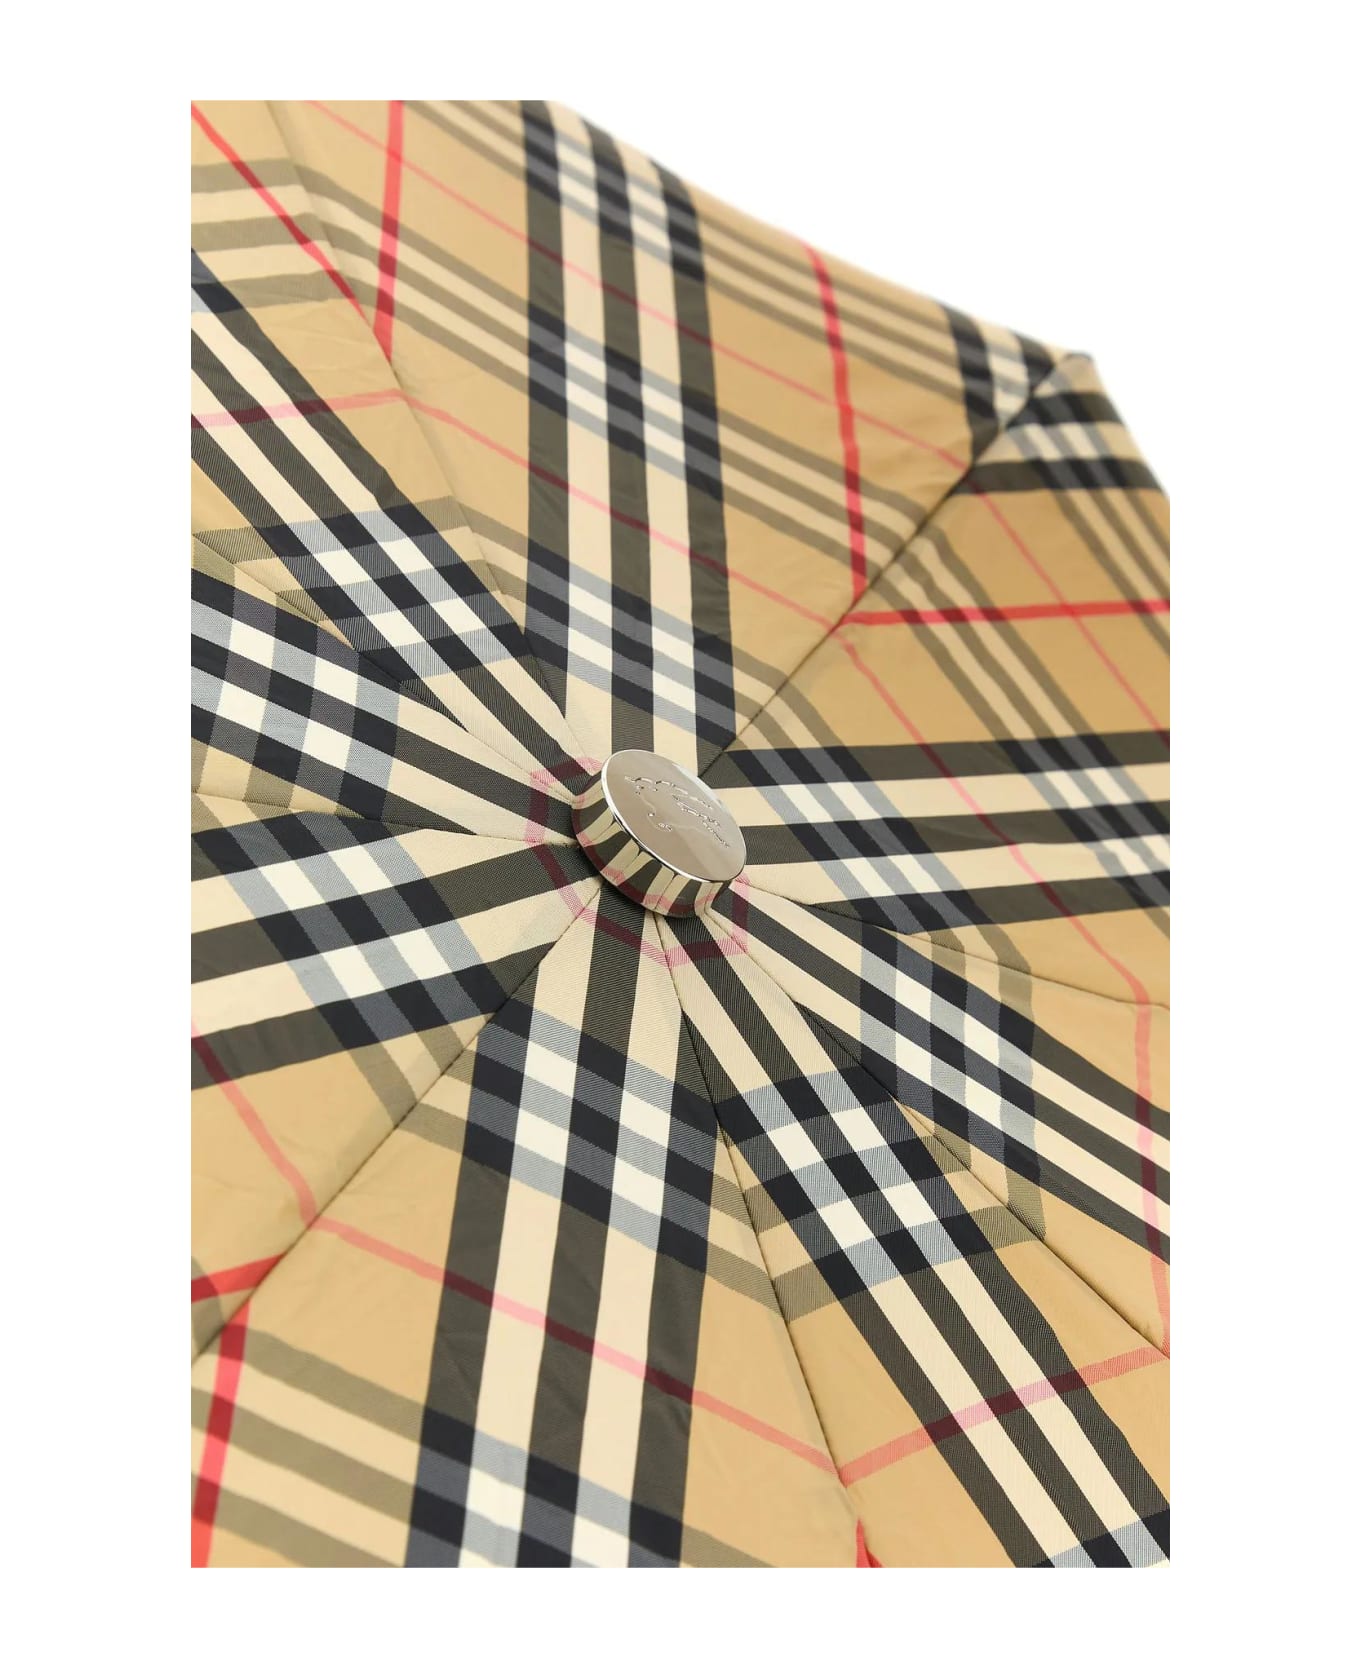 Burberry Printed Nylon Umbrella - Beige